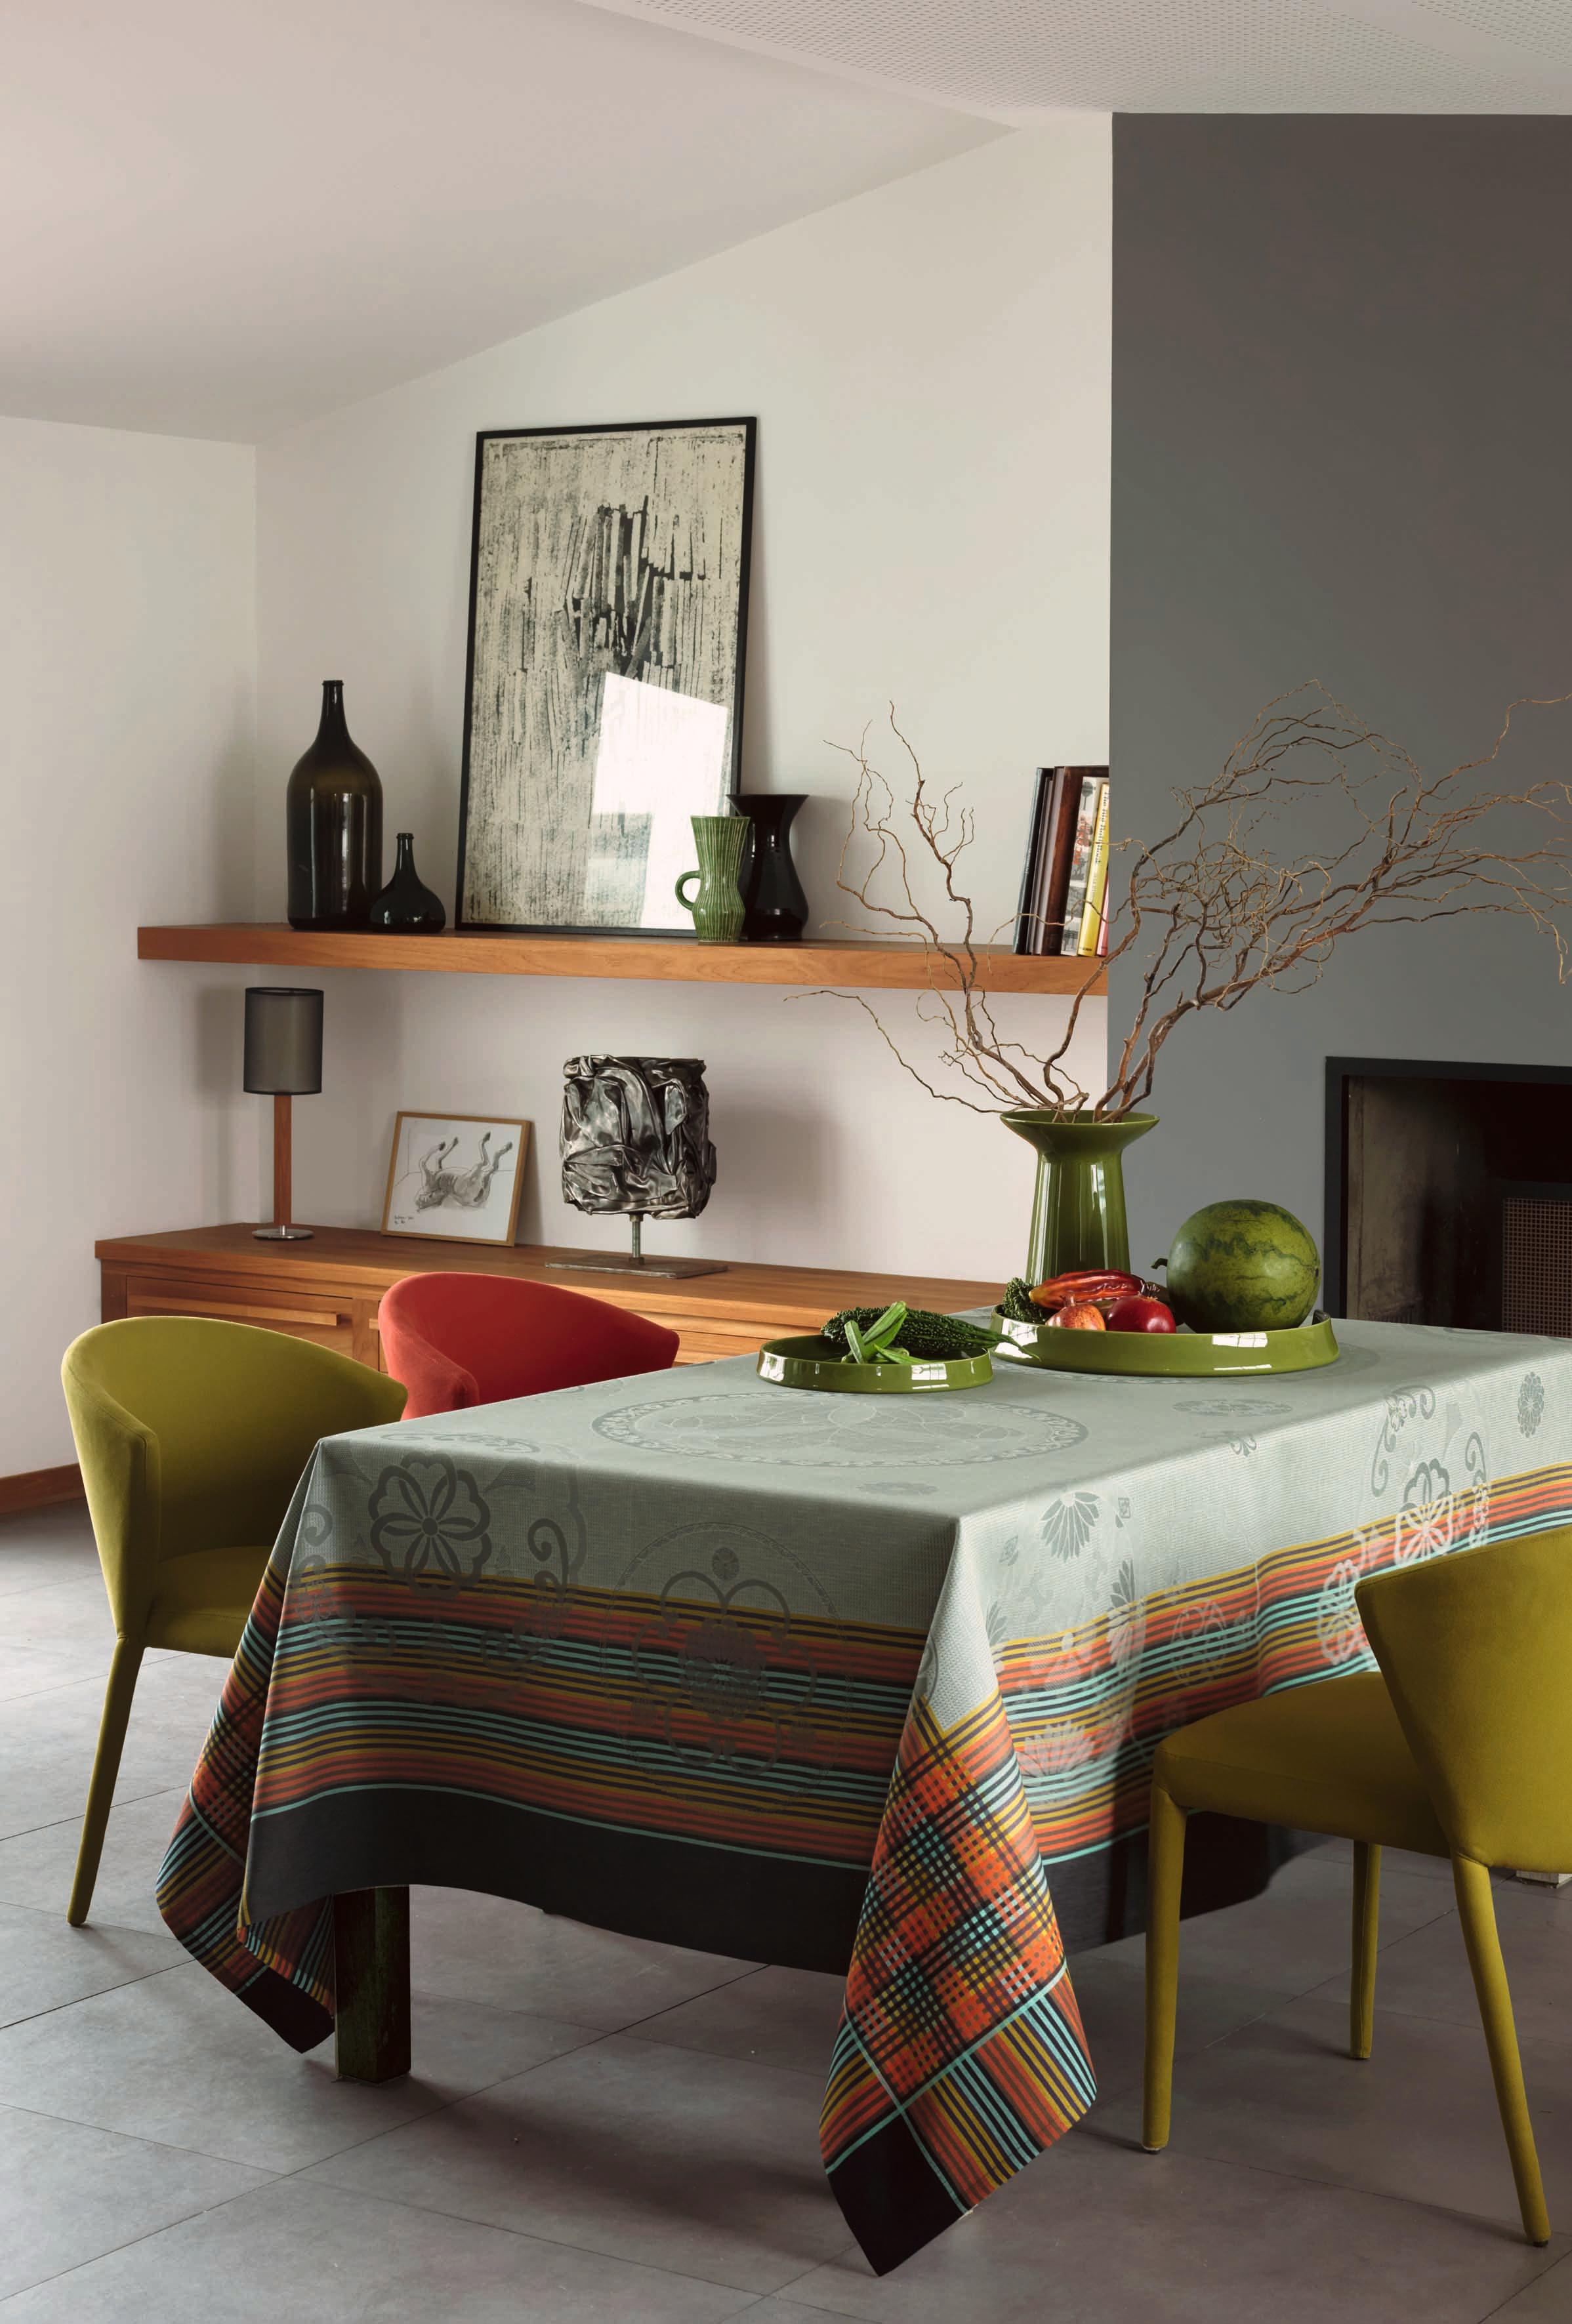 Tischdecke mit farbenfrohen Mustern #bilderrahmen #tischlampe #grünevase ©Le Jacquard Francais